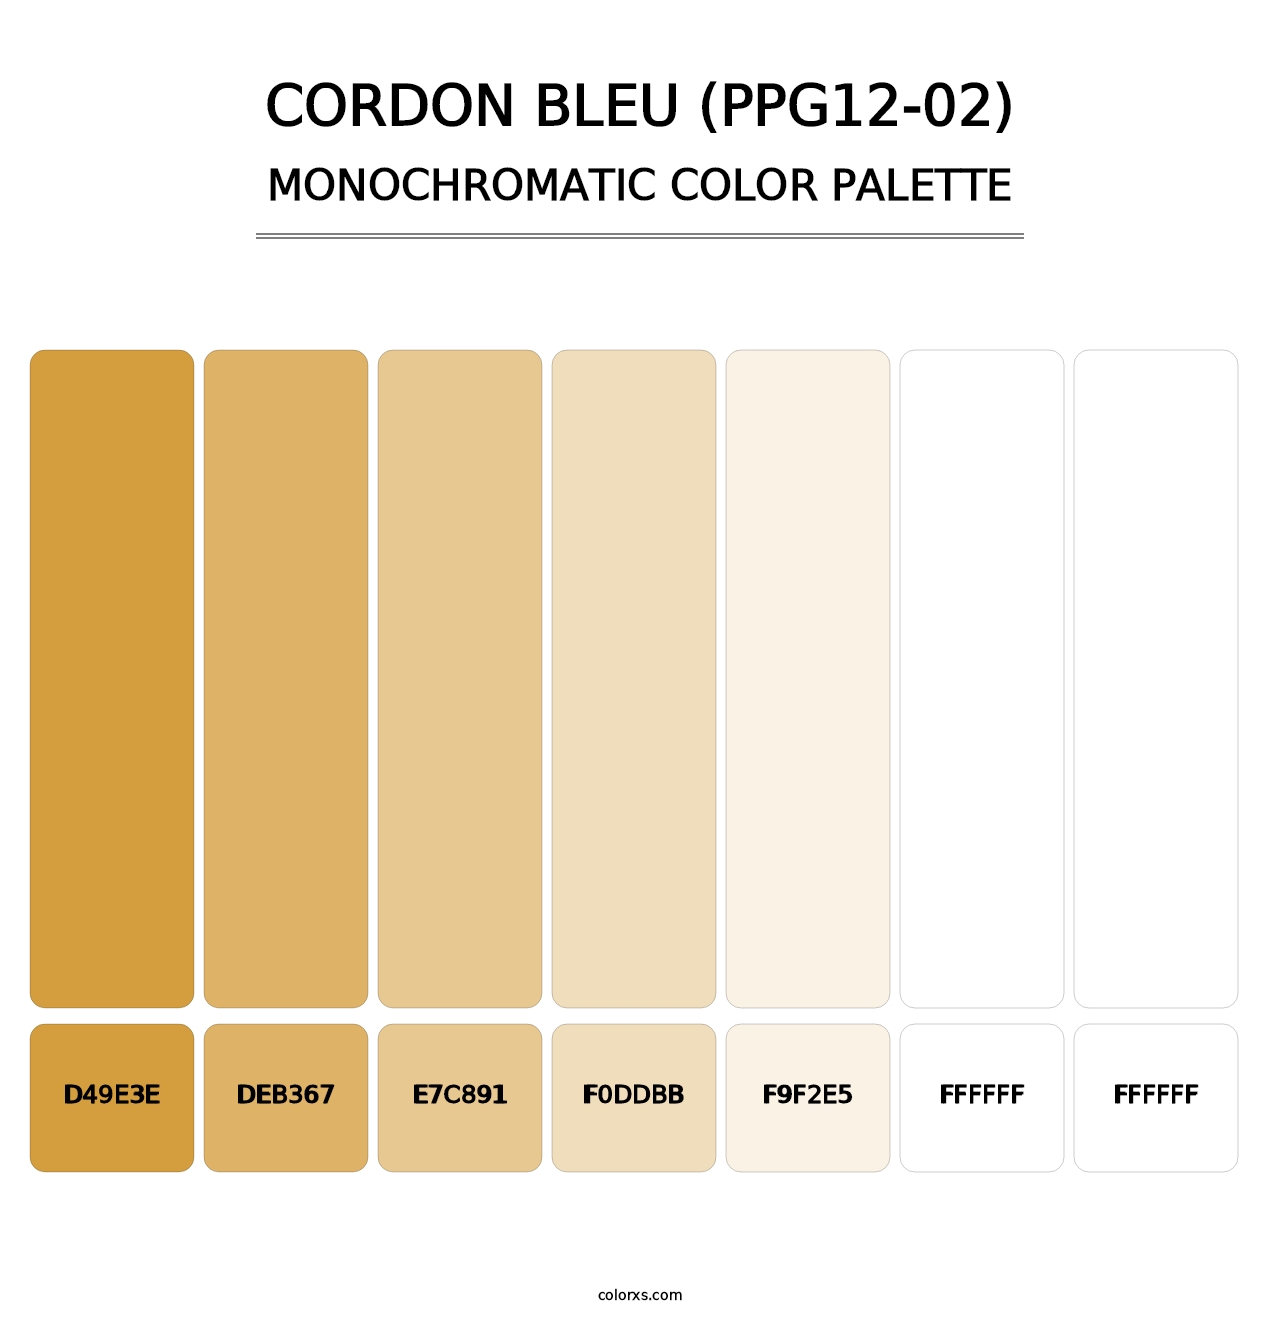 Cordon Bleu (PPG12-02) - Monochromatic Color Palette